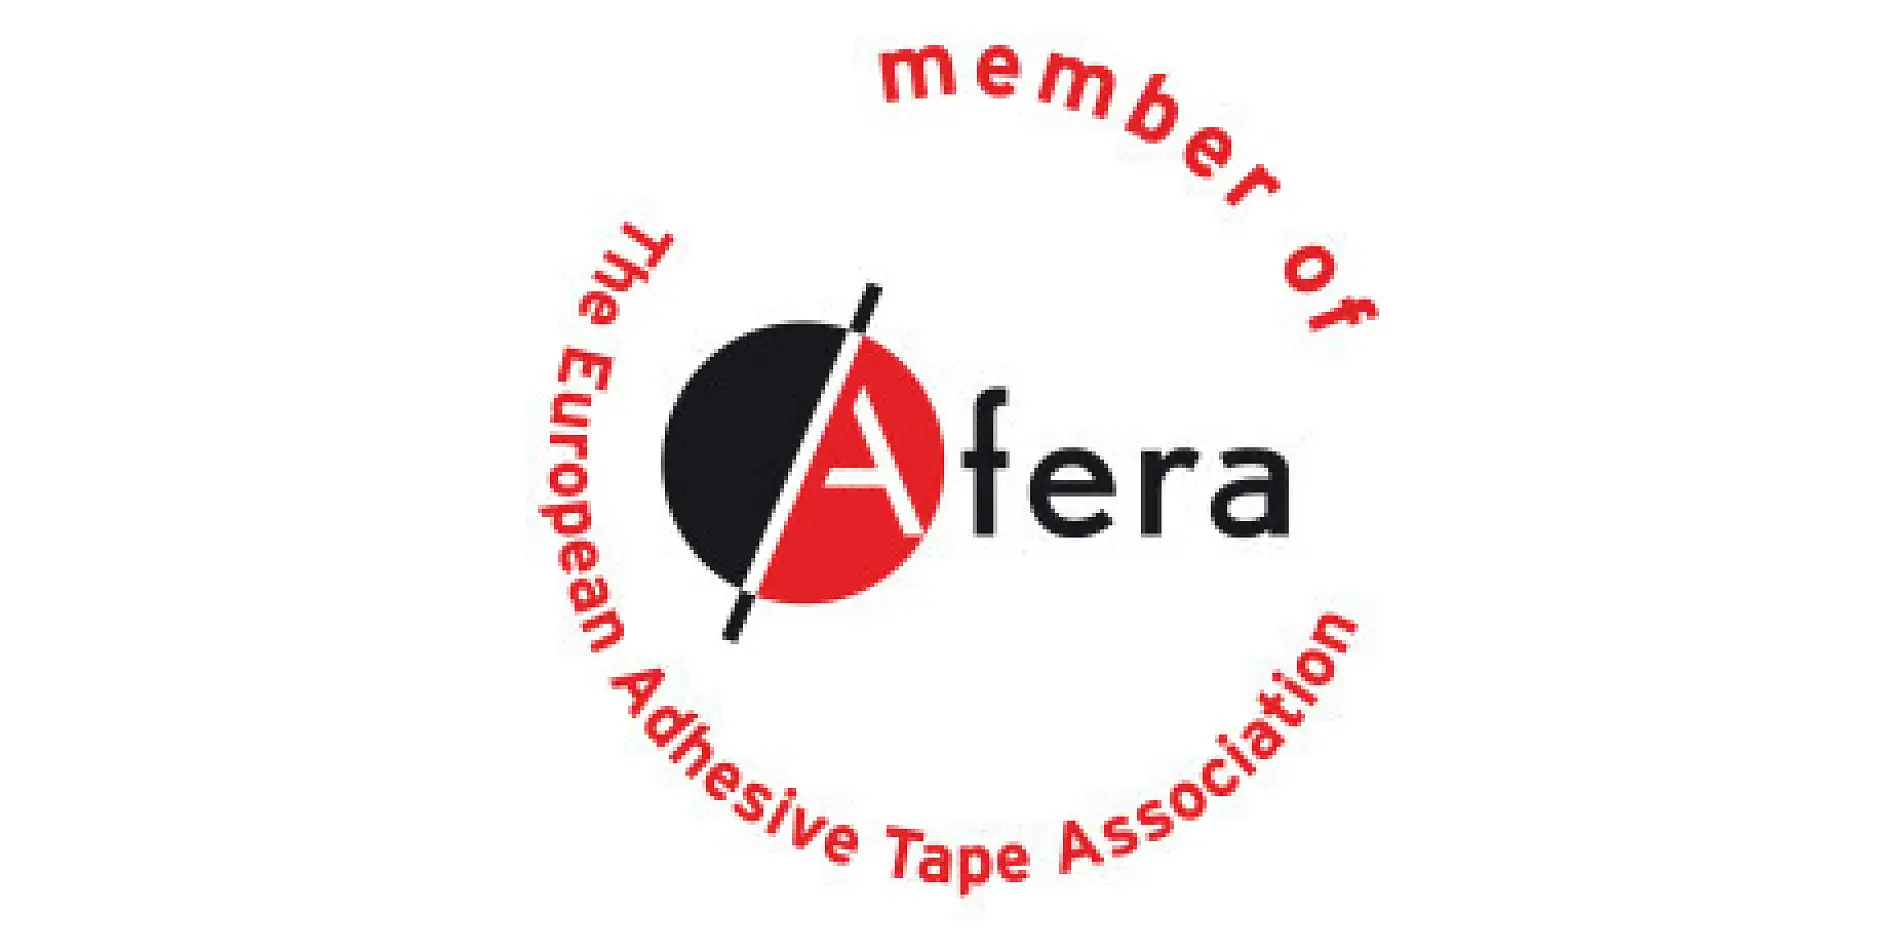 tesa là thành viên của afera - Hiệp hội Băng keo Châu Âu. Thành viên của hiệp hội bao gồm các nhà sản xuất, nhà cung ứng vật liệu thô và máy móc, các công ty máy biến đổi (như máy in, máy xẻ, máy cắt theo khuôn và máy cán băng keo) và các tổ chức băng keo quốc gia.